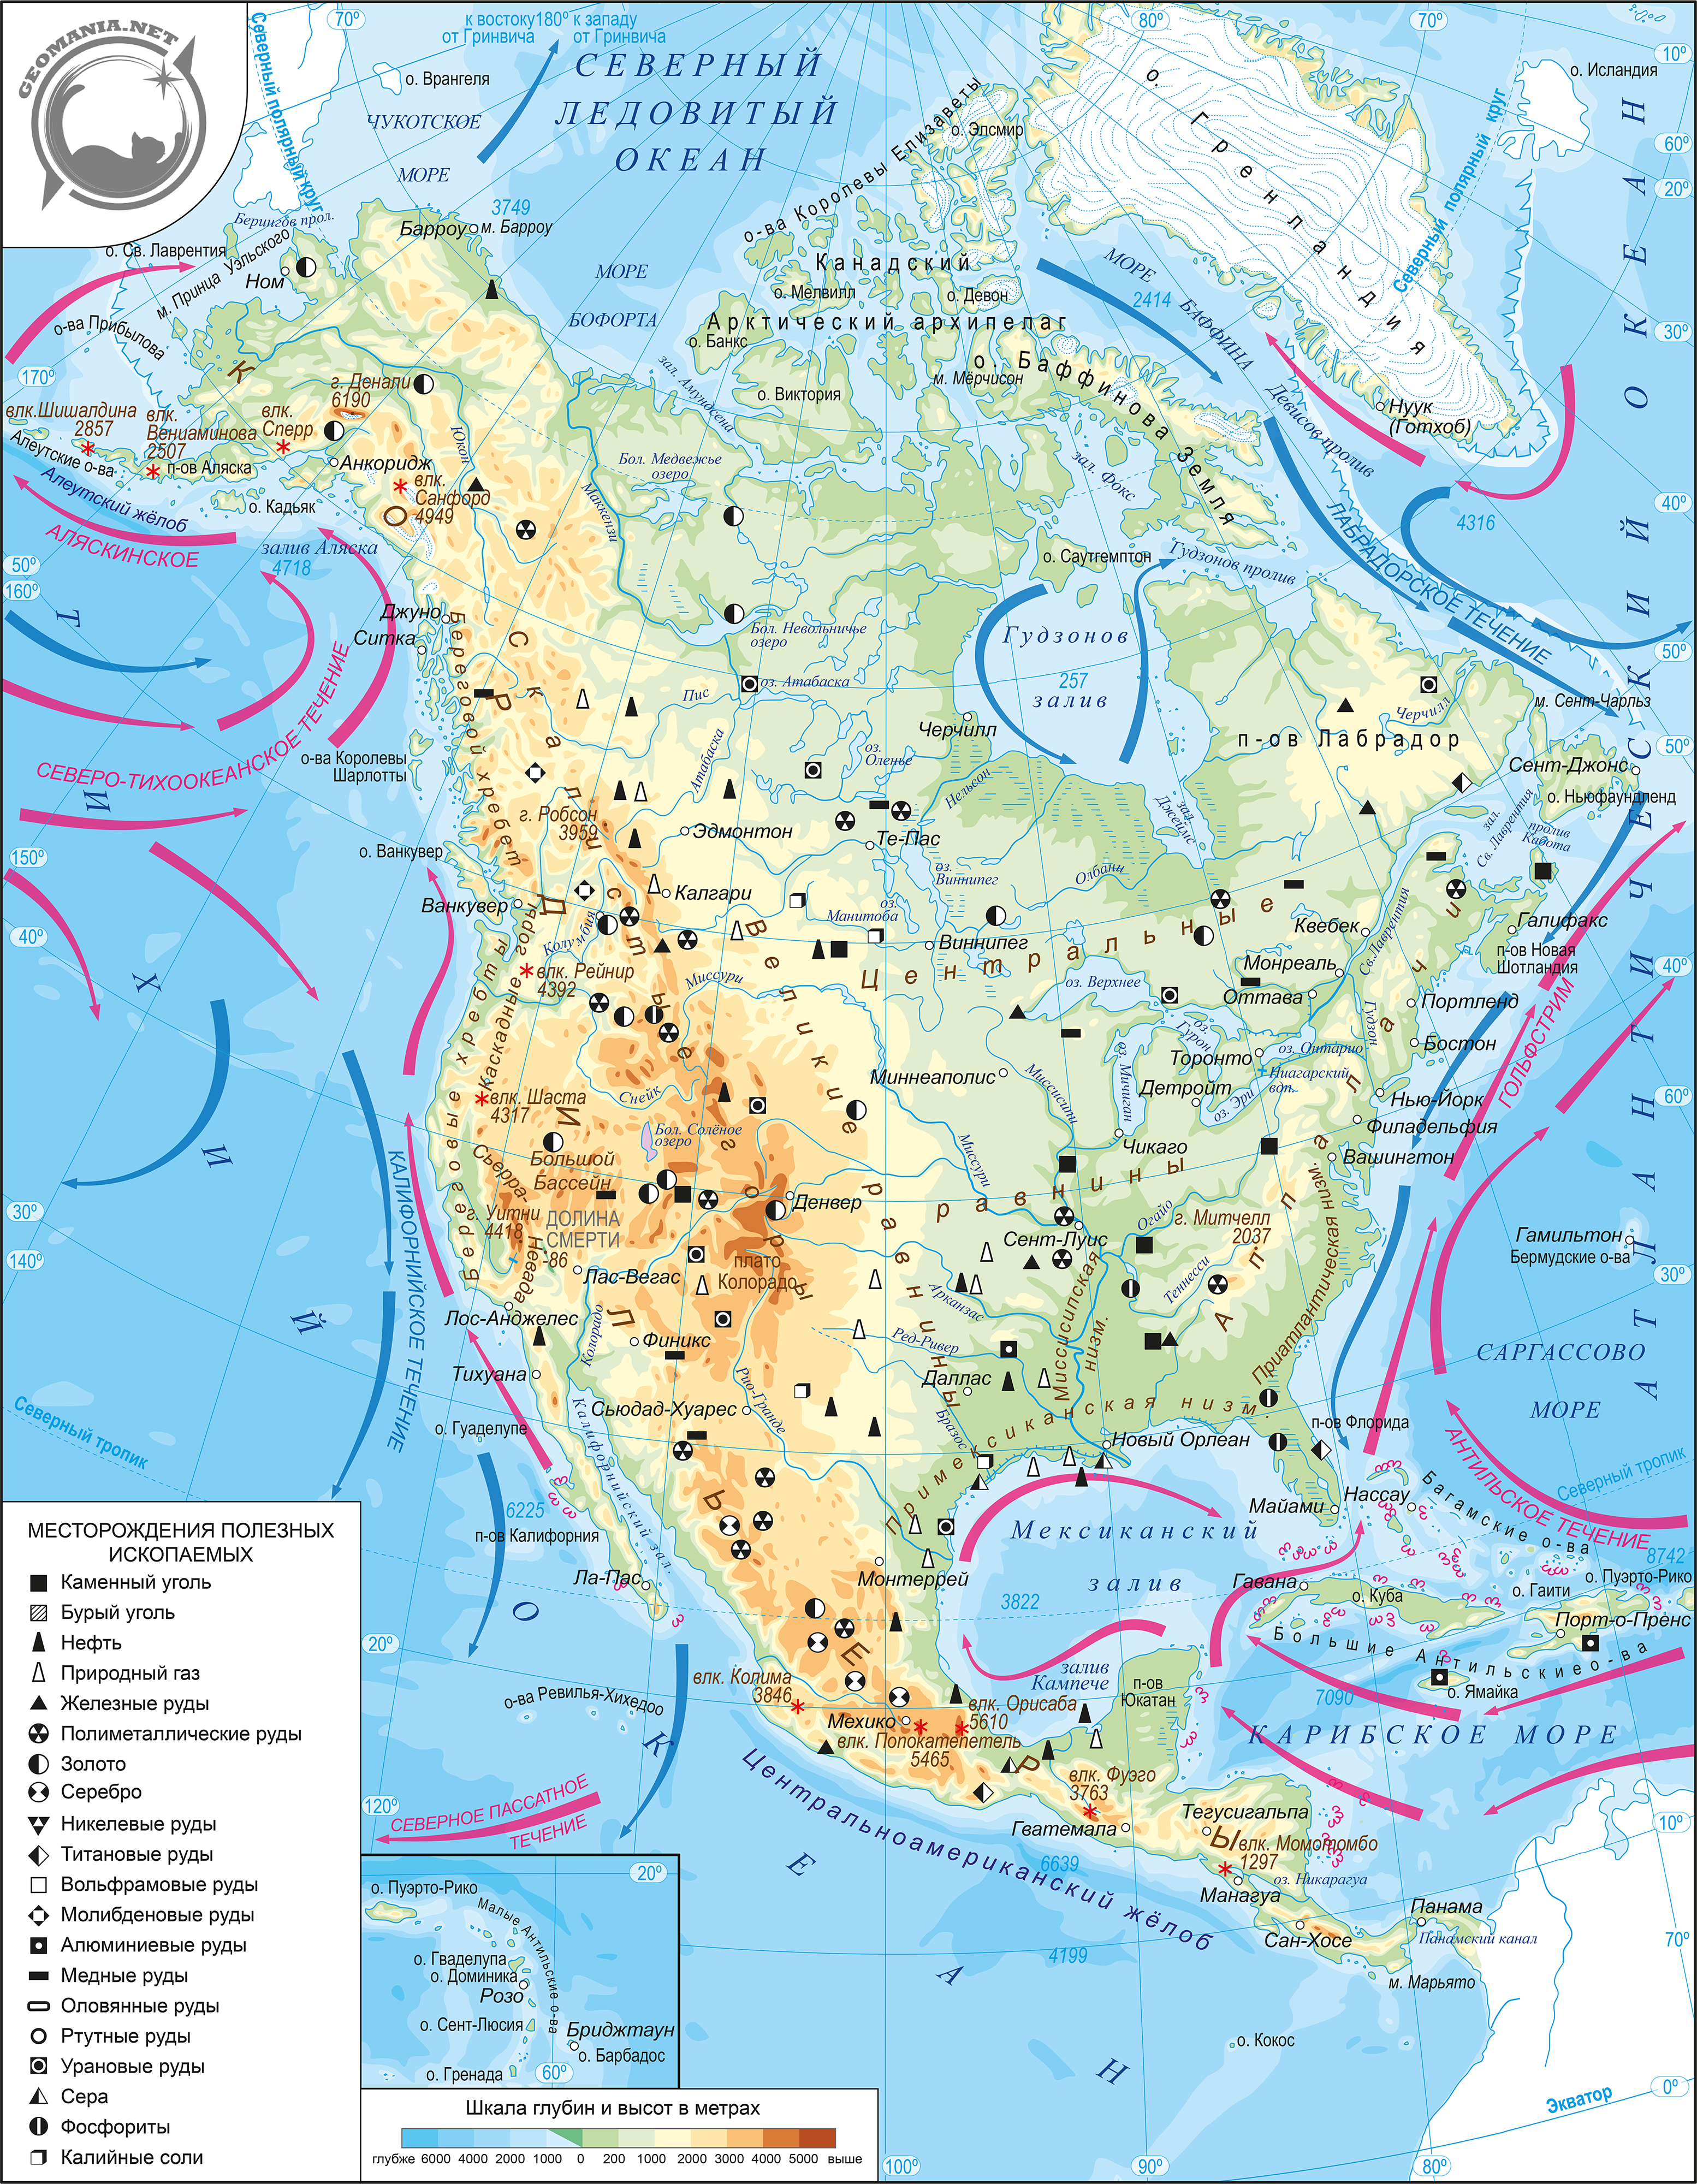 7 класс география объекты северной америки. Физическая карта Северной Америки атлас. Карта Северной Америки 7 класс география атлас. География атлас 7 класс физическая Северная Америка. Карта Северной Америки географическая крупная.